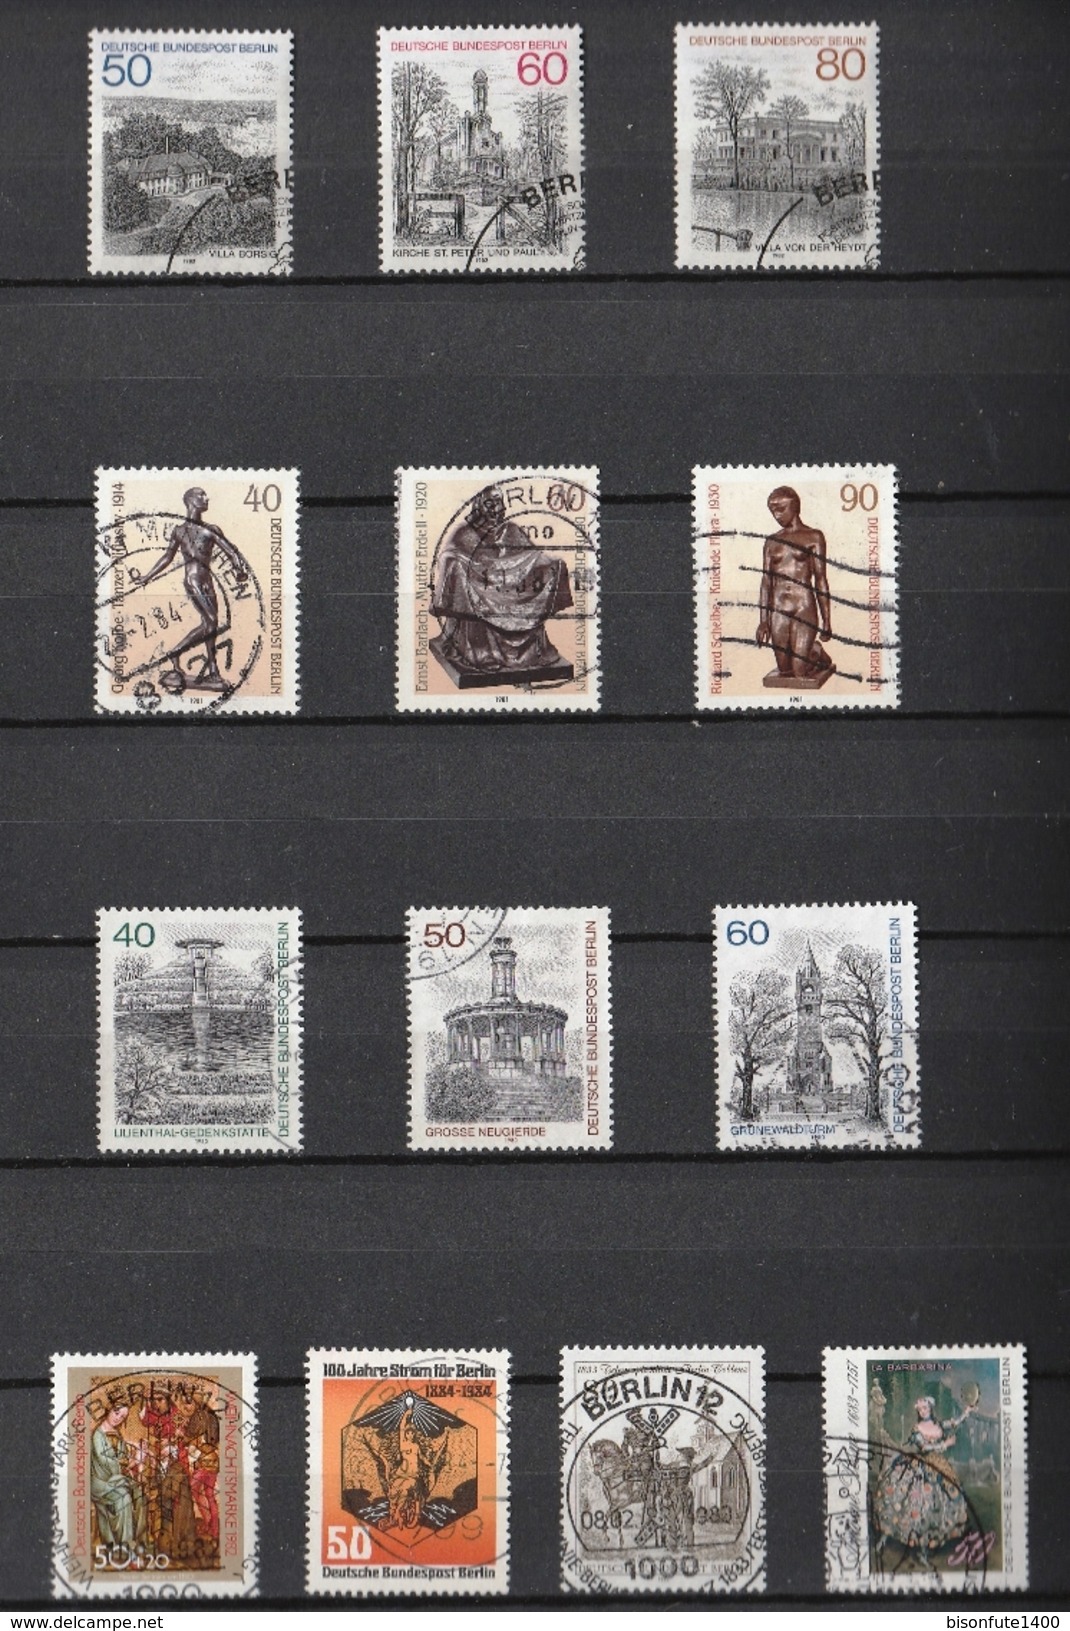 Jolie petite collection de timbres Allemagne Berlin avec jolies oblitérations et séries complètes (voir les 15 photos)